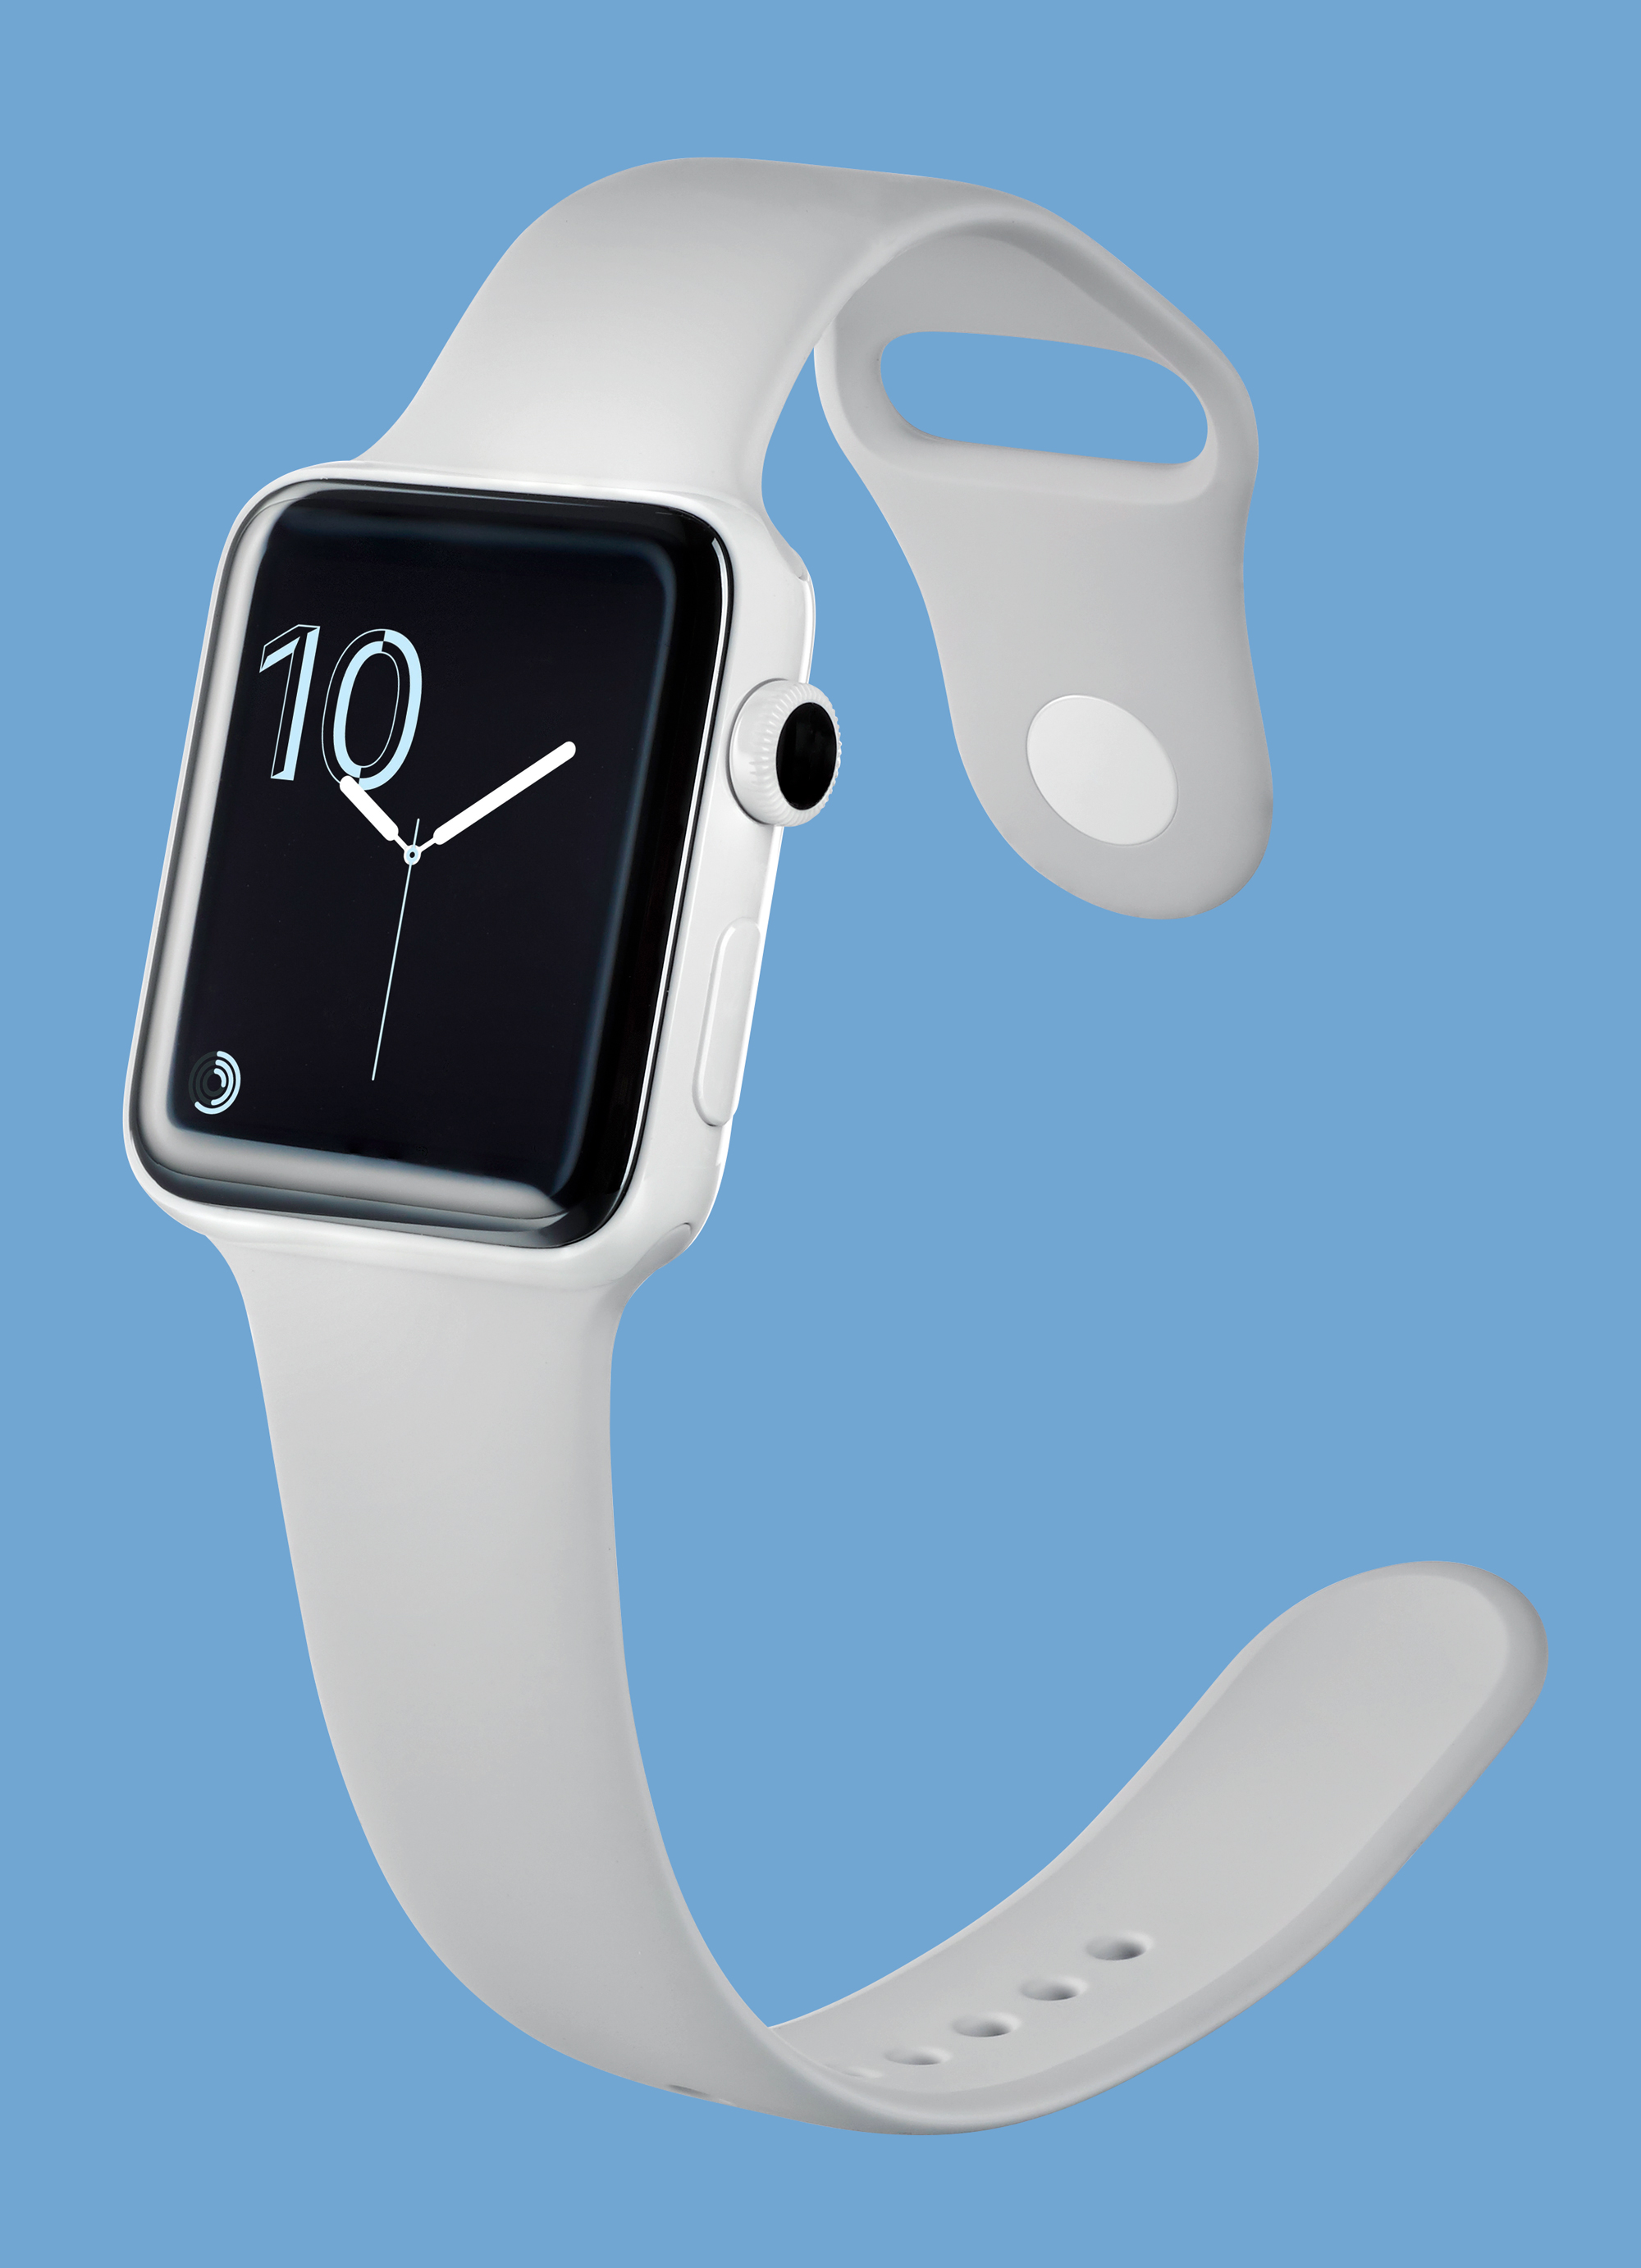 Dzięki wodoszczelnej obudowie ze smartwatcha Apple można bez przeszkód korzystać np. na basenie.